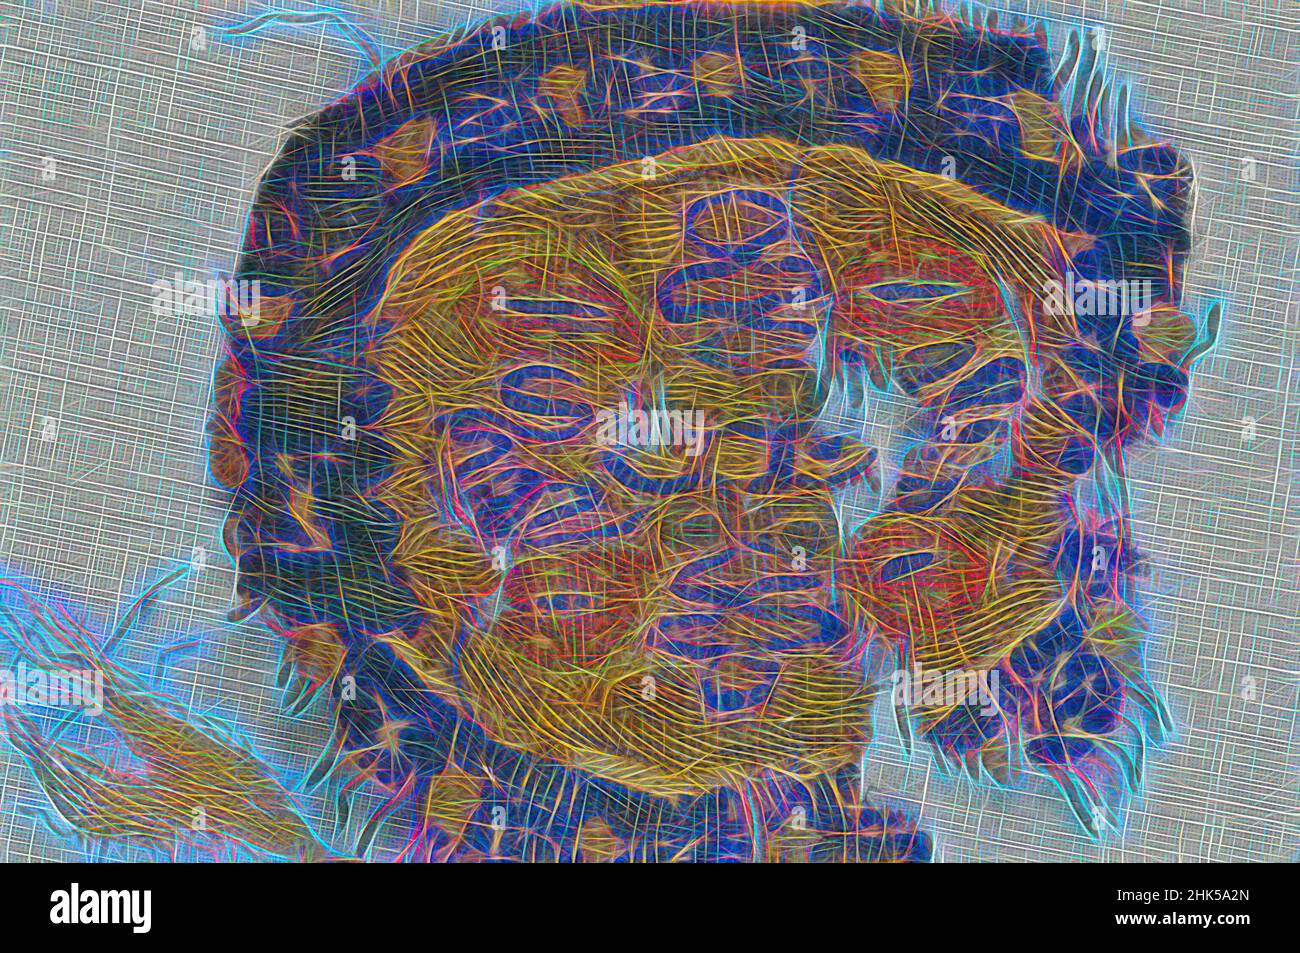 Inspiriert von Roundel Fragment mit botanischem Dekor, Koptisch, Wolle, 5th-7th Jahrhundert n. Chr., Spätantike, 3 1/8 x 3 1/8 Zoll, 8 x 8 cm, koptisch, koptisch, Ägypten, ägyptisch, Rund, Tapisserie, Wolle, neu gestaltet von Artotop. Klassische Kunst neu erfunden mit einem modernen Twist. Design von warmen fröhlichen Leuchten der Helligkeit und Lichtstrahl Strahlkraft. Fotografie inspiriert von Surrealismus und Futurismus, umarmt dynamische Energie der modernen Technologie, Bewegung, Geschwindigkeit und Kultur zu revolutionieren Stockfoto